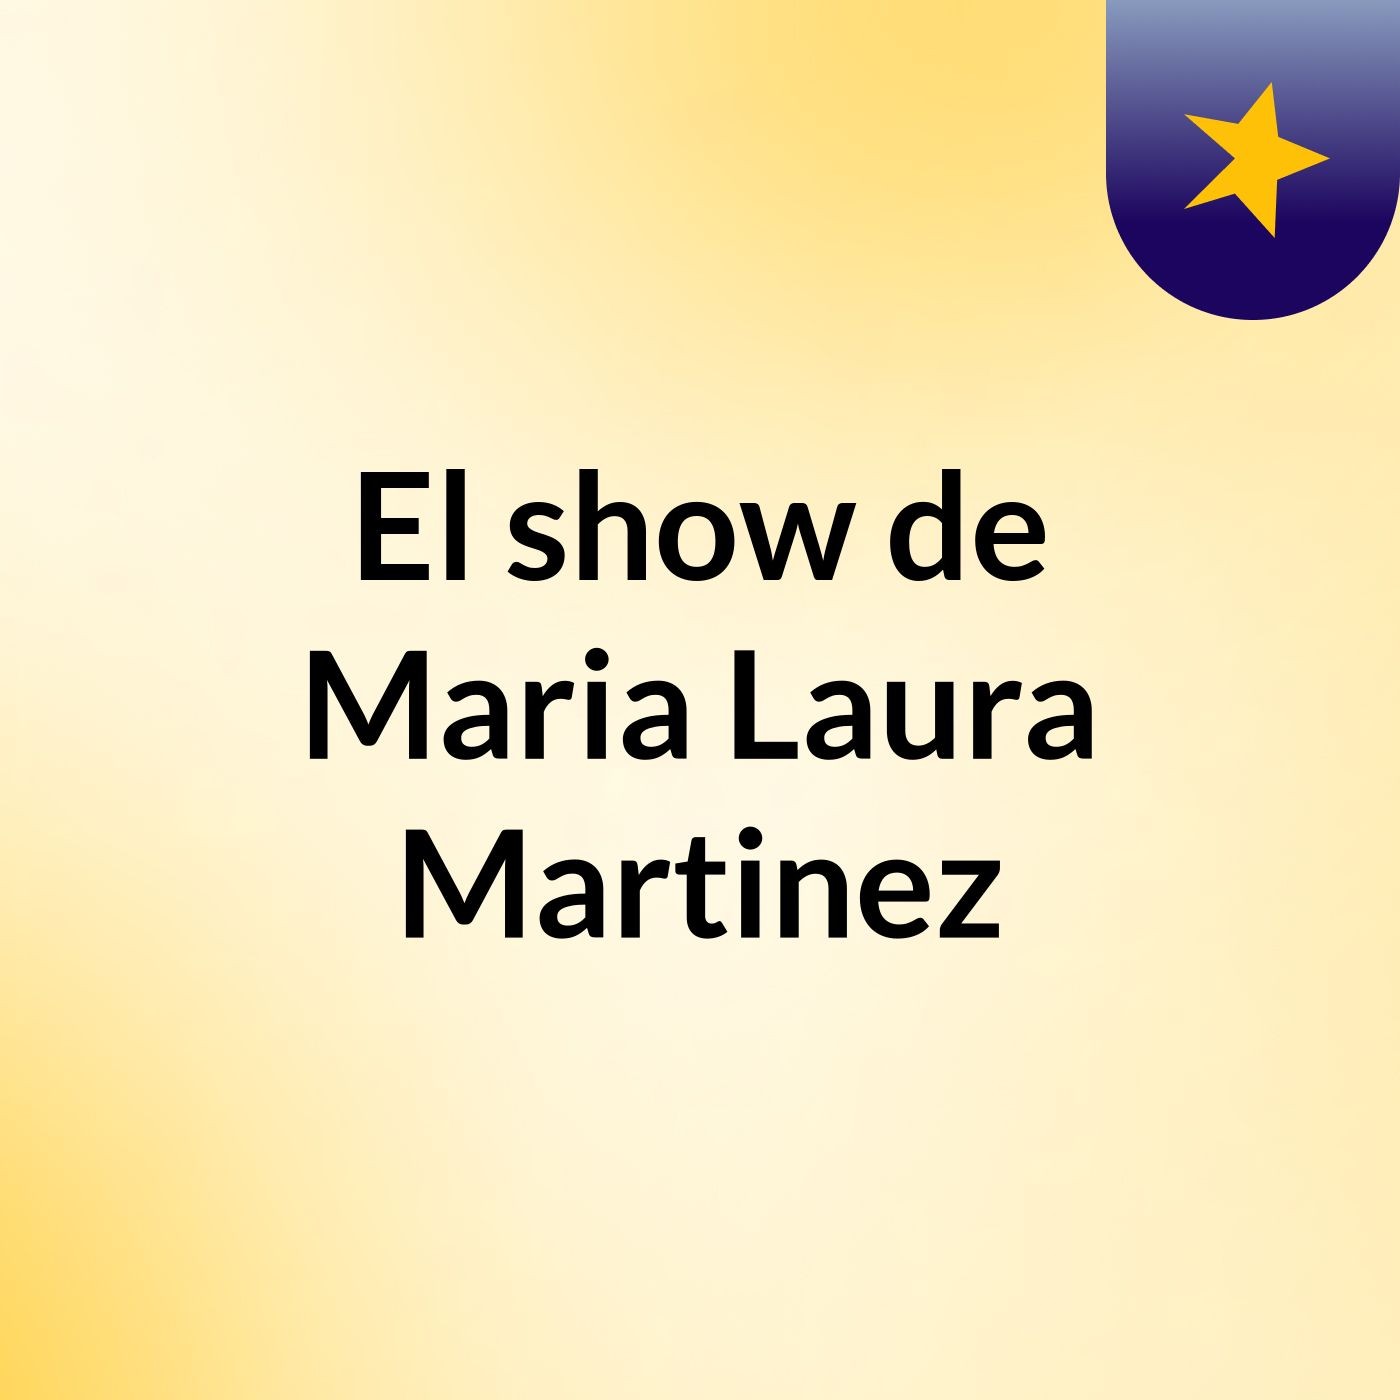 El show de Maria Laura Martinez